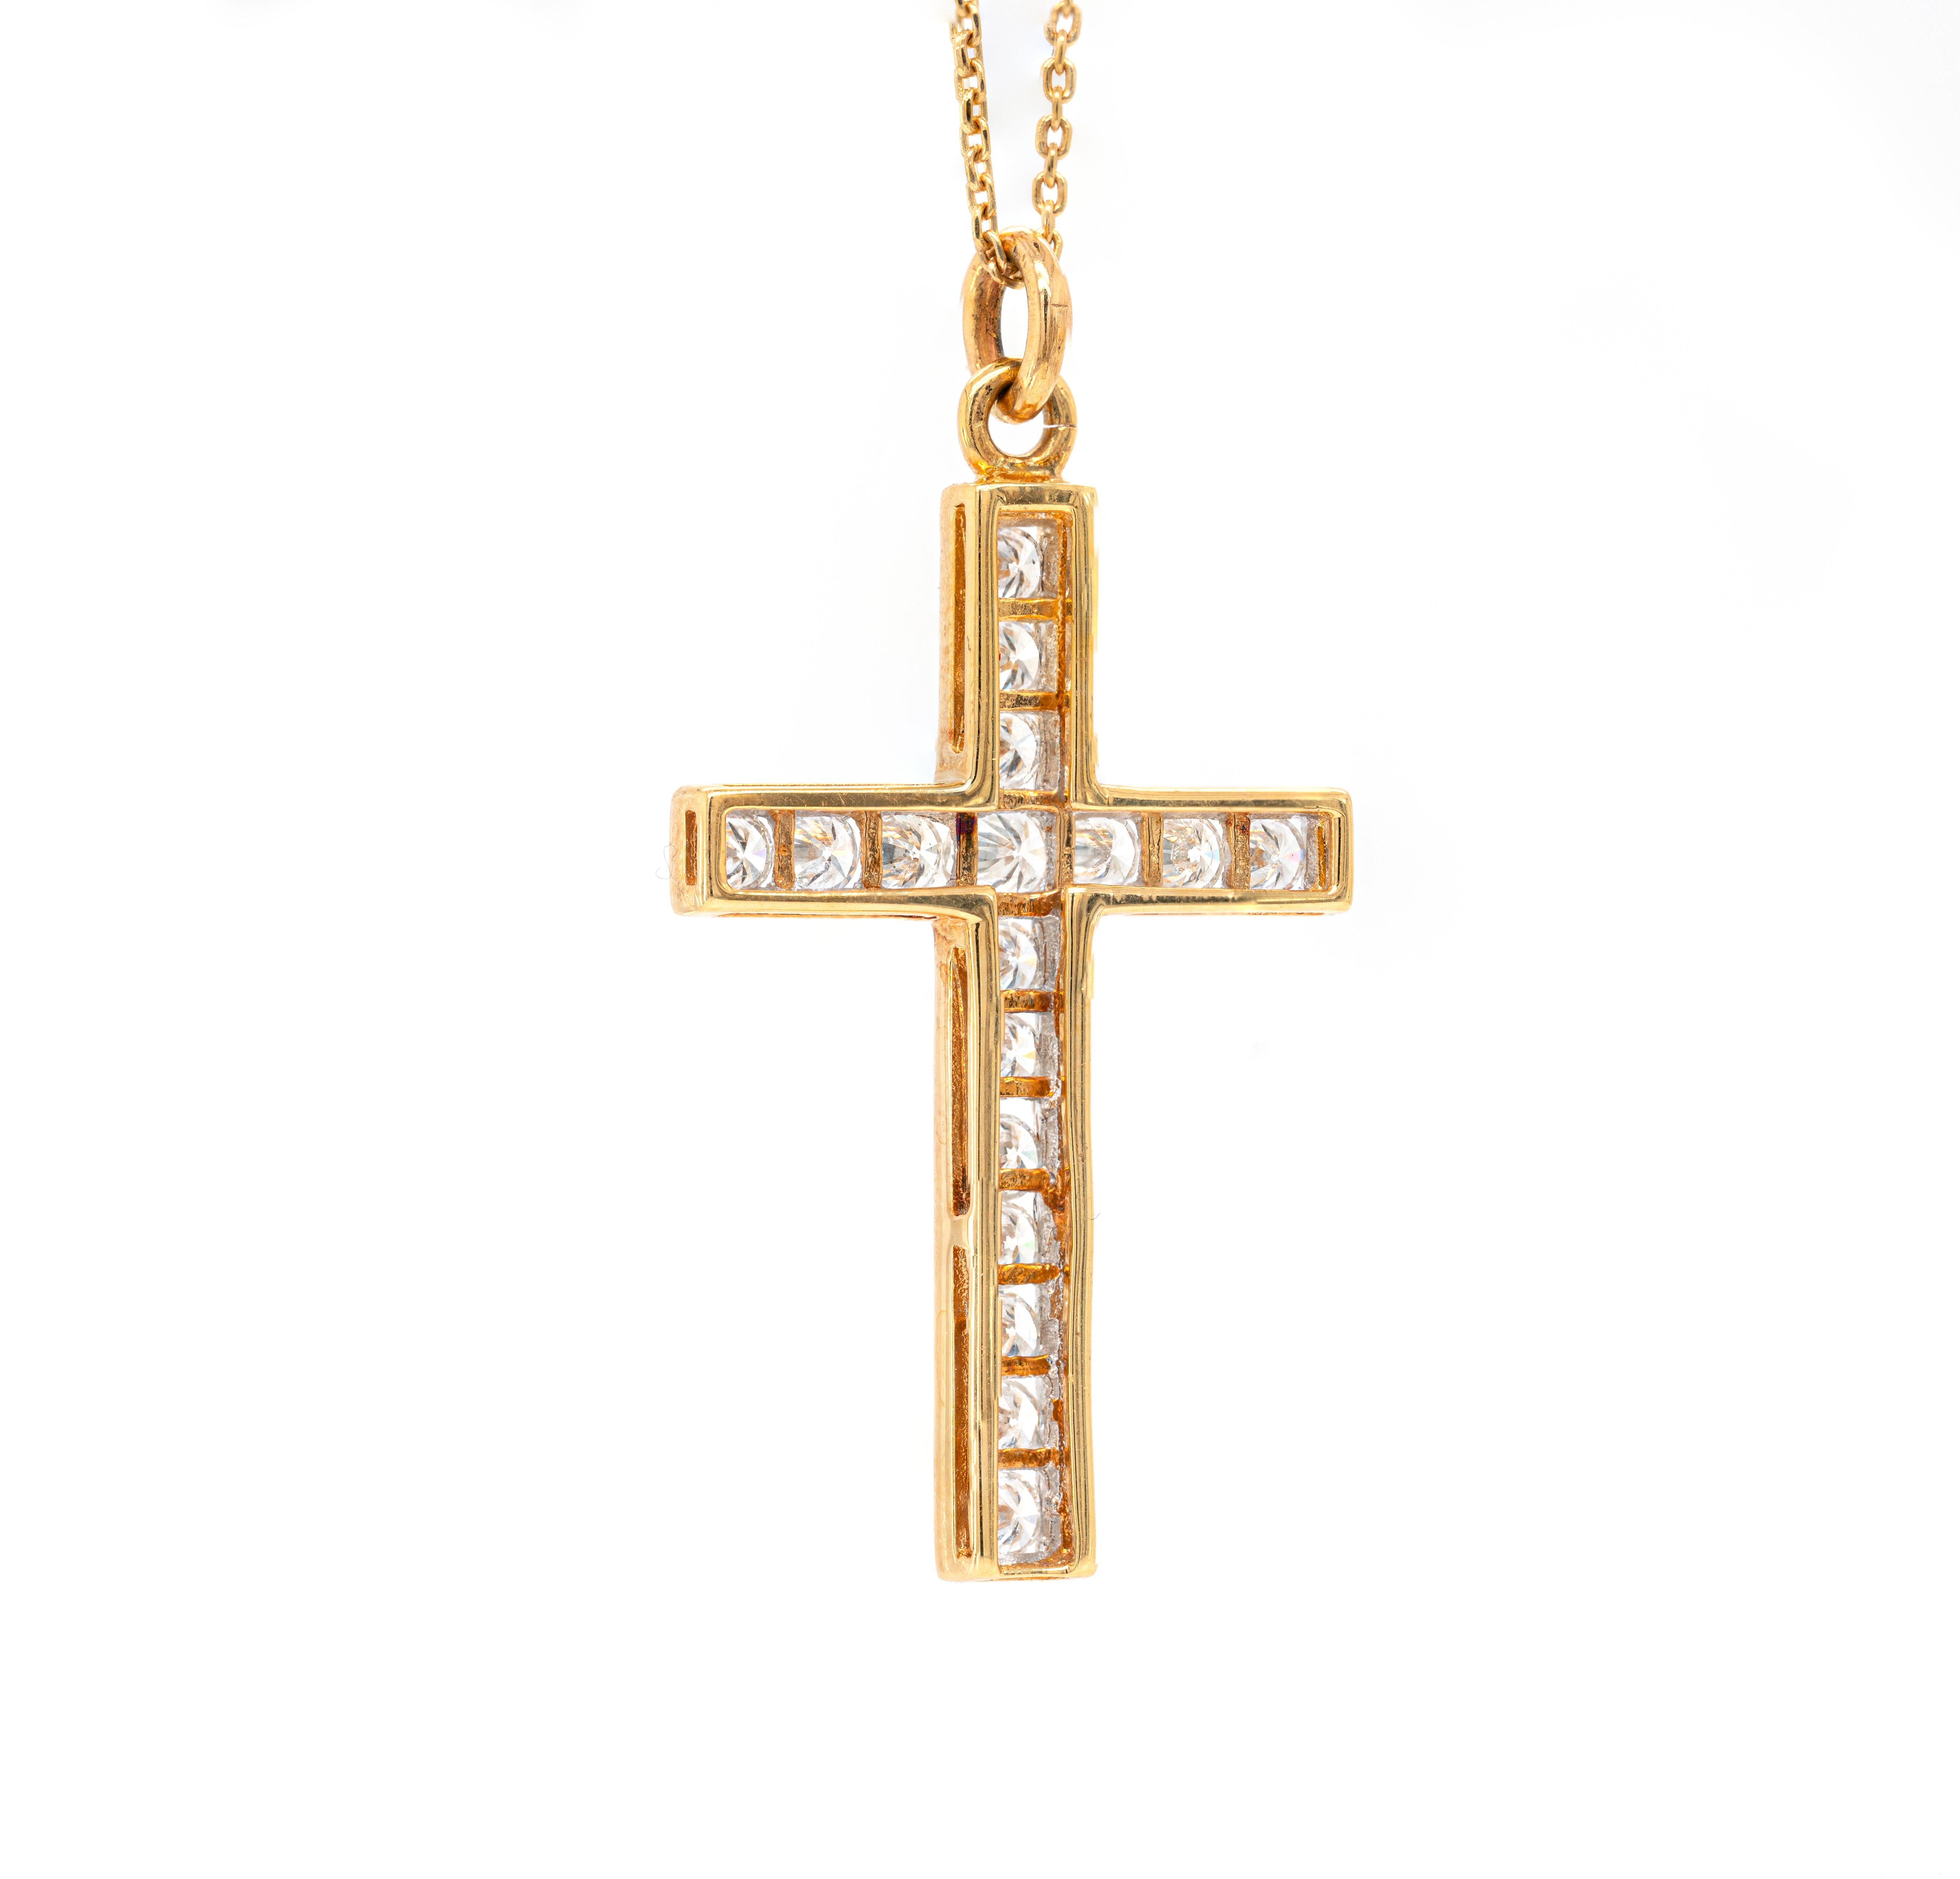 Ce magnifique pendentif en forme de croix classique présente 17 diamants ronds de taille brillant d'un poids total approximatif de 1,50 carat, tous sertis en canal dans une monture en or jaune 18 carats. Ce magnifique pendentif mesure 4,0 x 2,2 cm